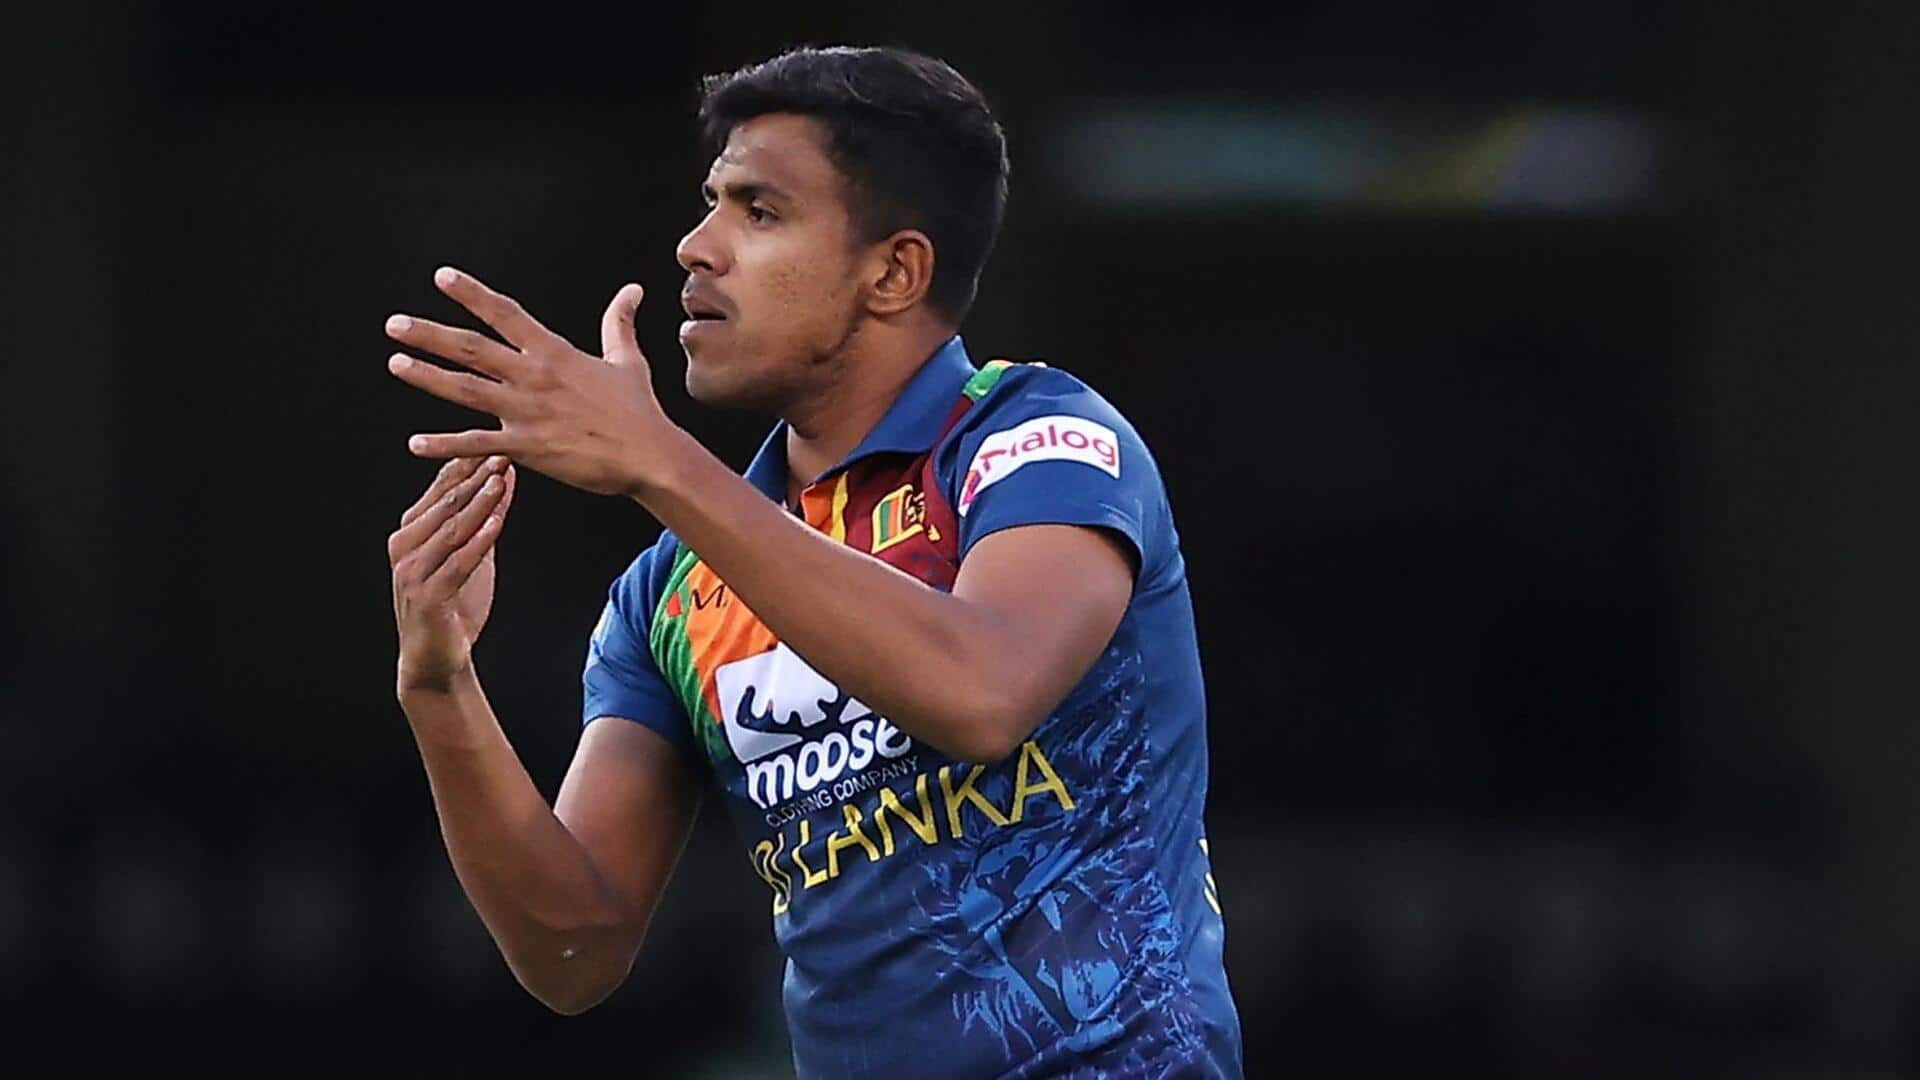 एशिया कप: श्रीलंका को फाइनल से पहले लगा बड़ा झटका, महेश तीक्षाना के खेलने पर संशय 